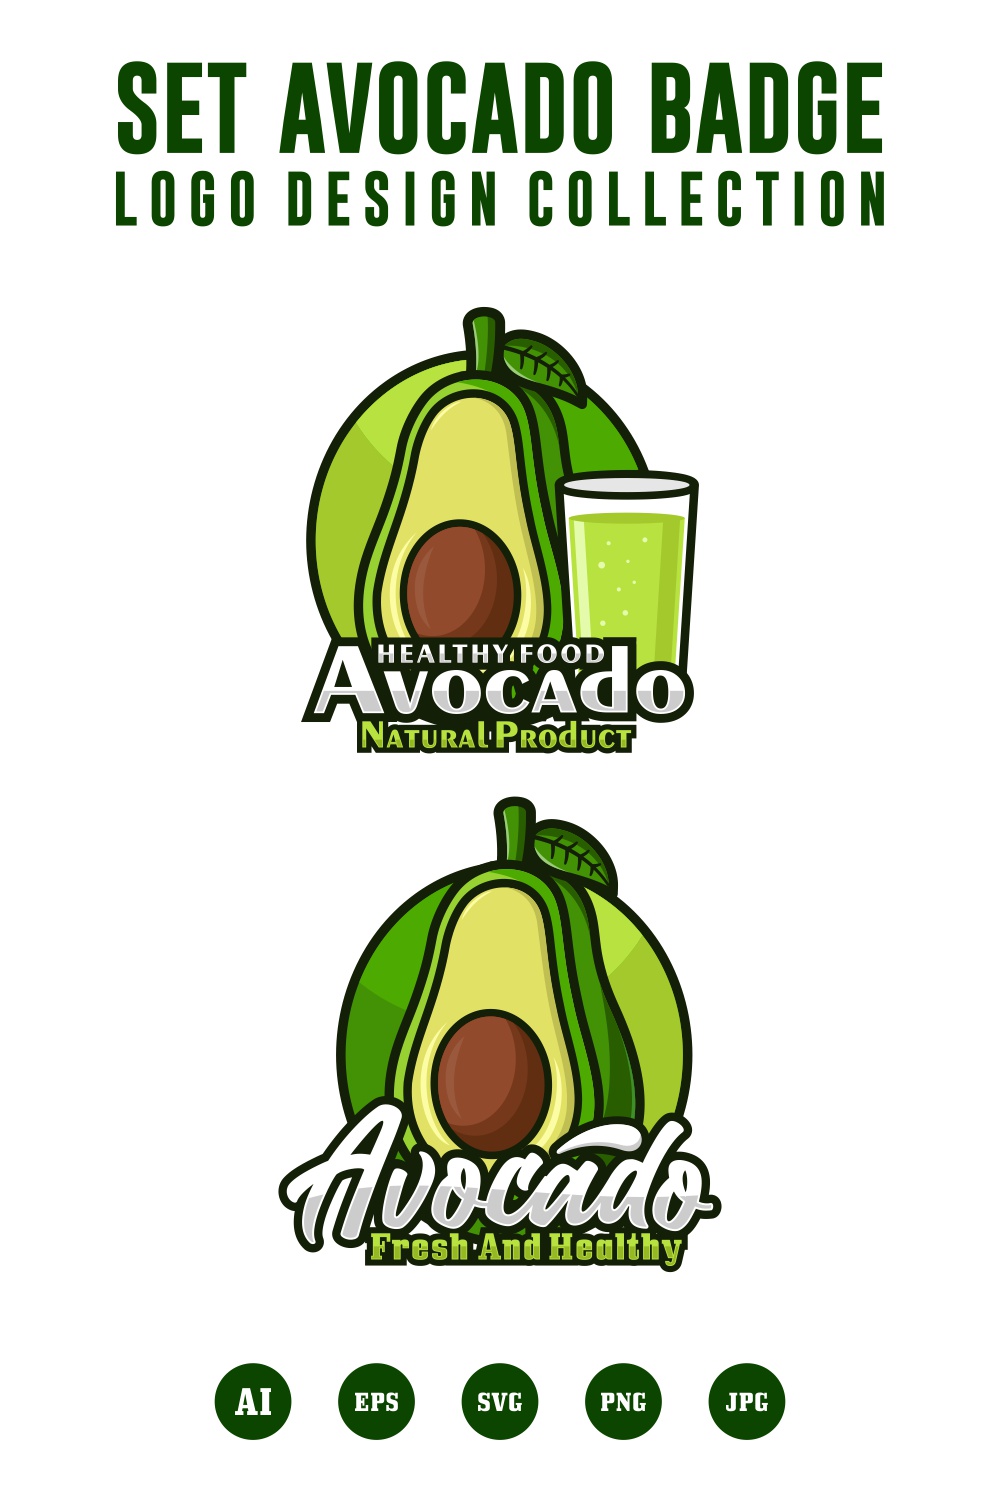 Set Avocado badge logo design collection - $4 pinterest preview image.